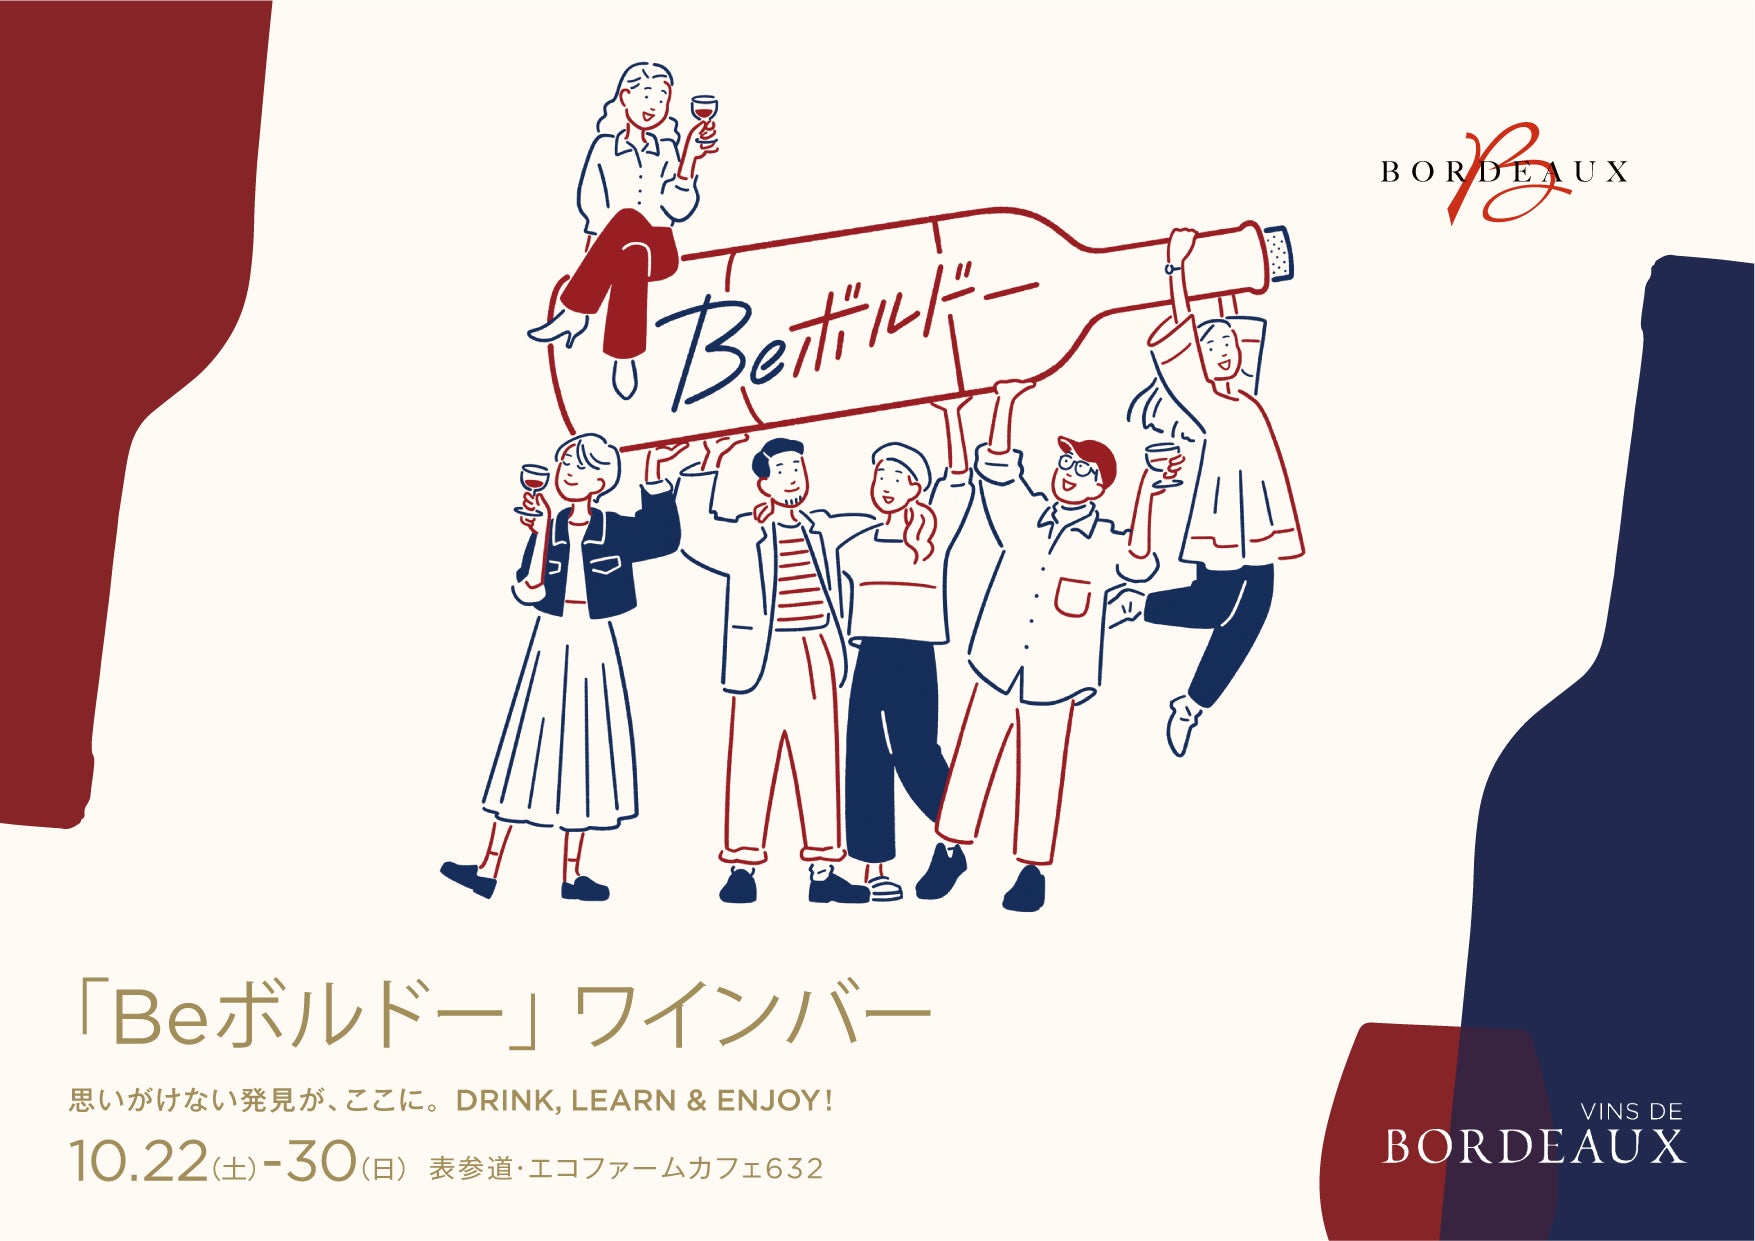 思いがけない発見が、ここに。「Beボルドー」ワインバーが、東京・表参道に期間限定でオープン